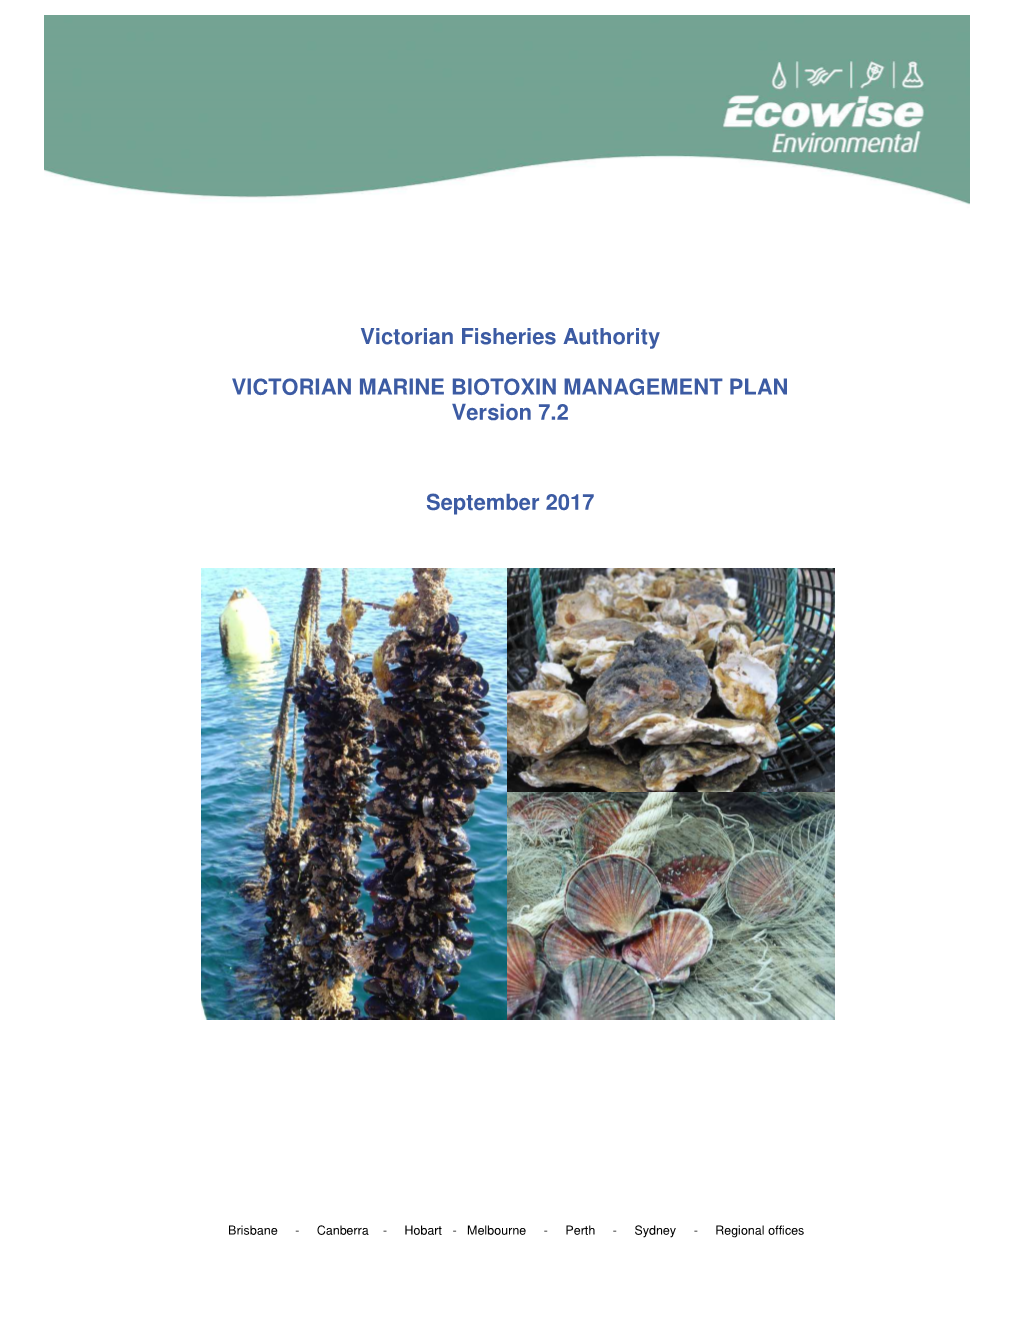 Victorian Marine Biotoxin Management Plan 2017